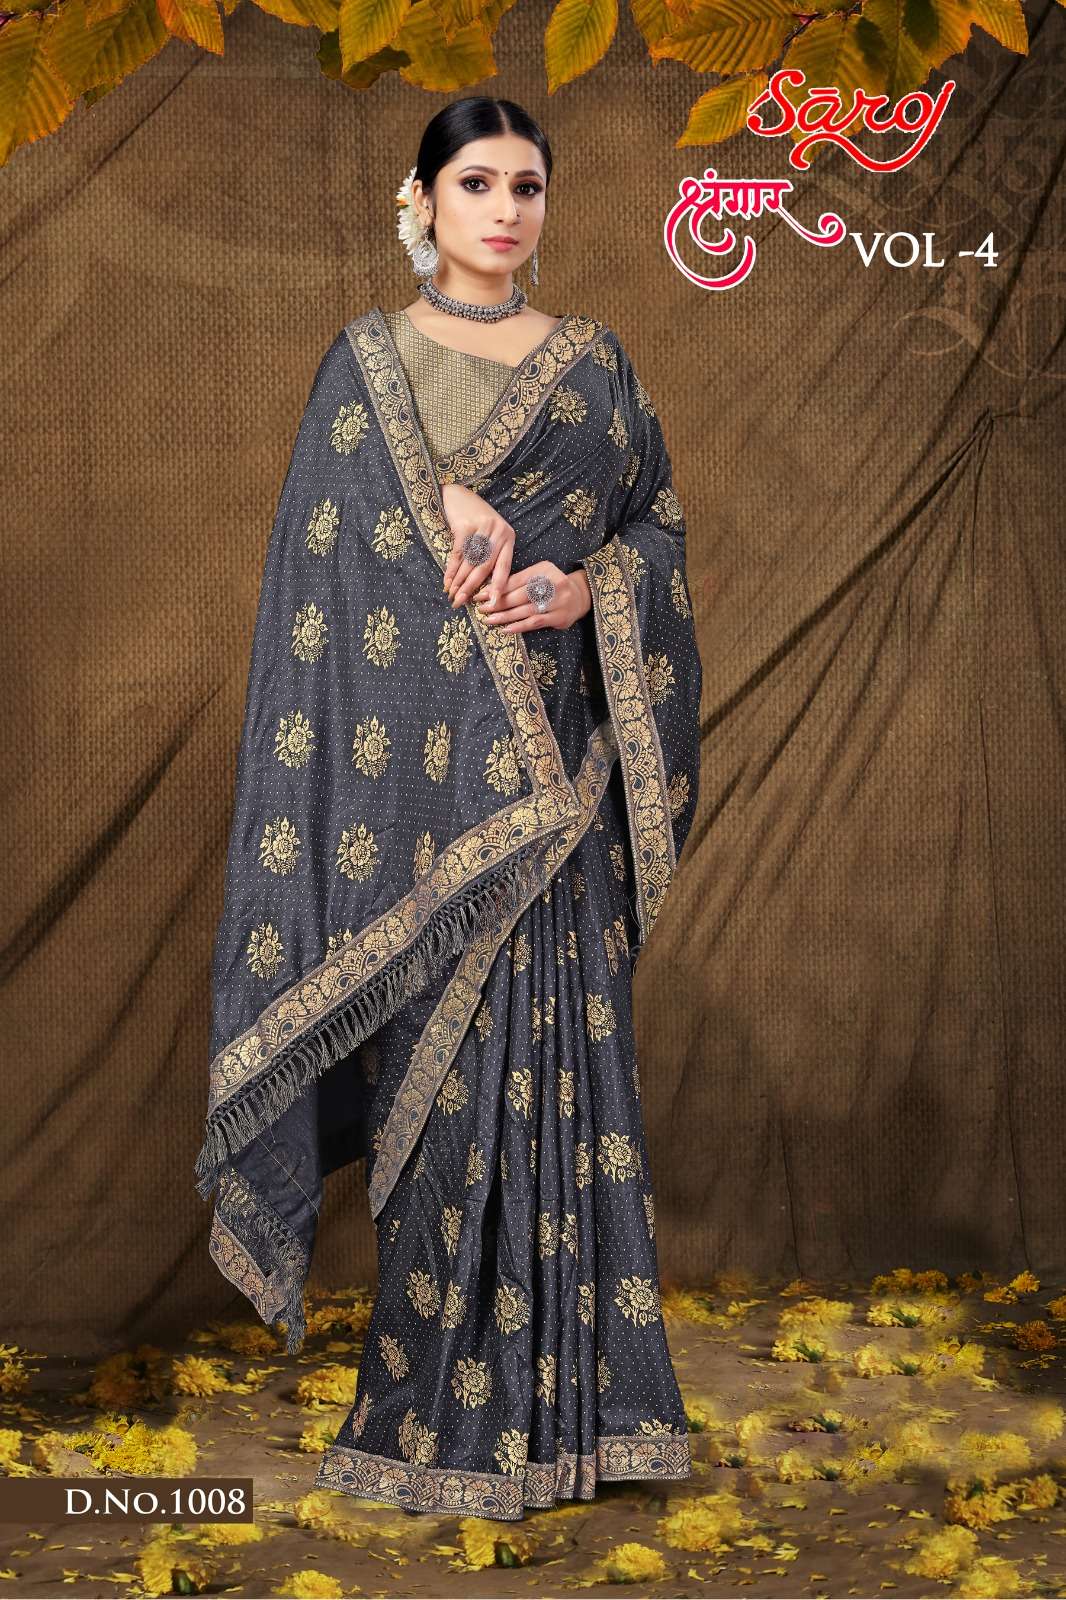 Saroj textile presents Shrungaar vol 4 casual sarees catalogue